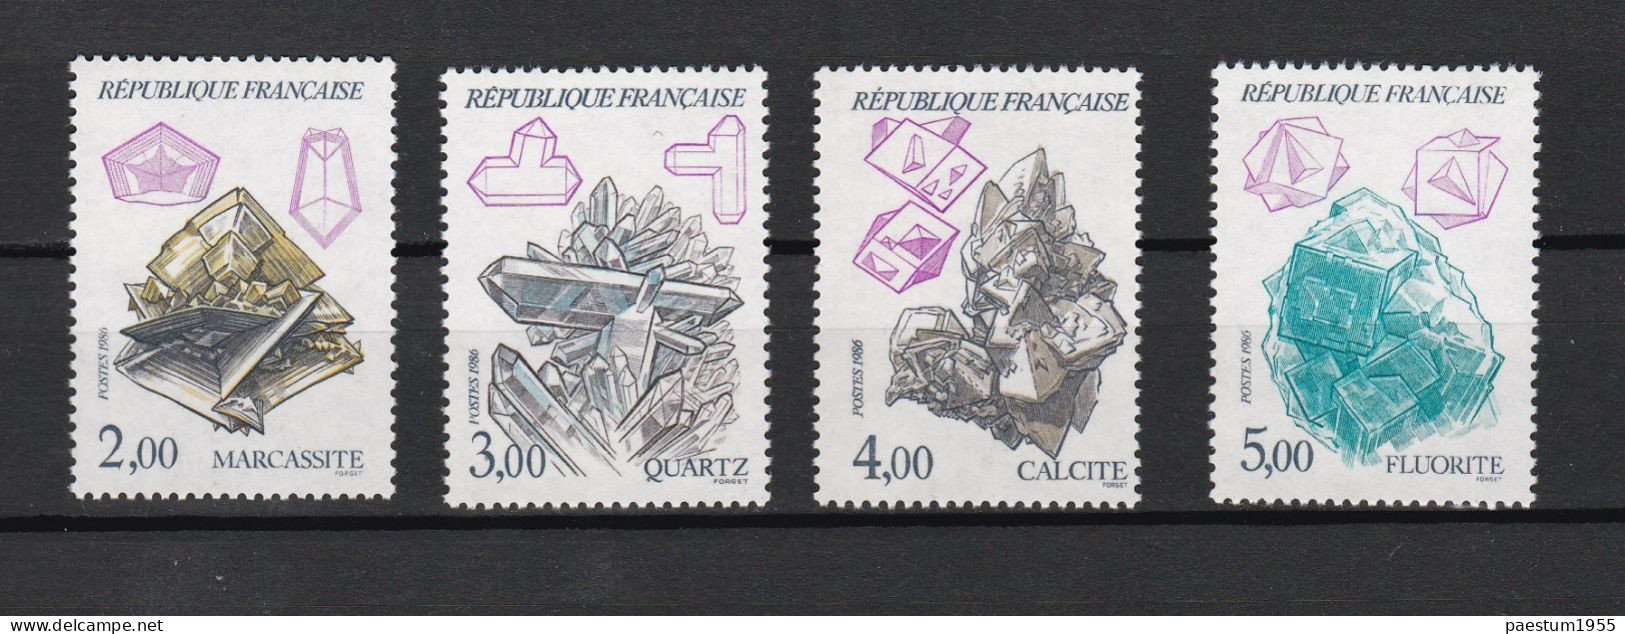 France Neuf** Sous Blister 1986 Collection Philatélique De La Poste De France N°03-86 Octobre 1986 9 Timbres + 1BF - Documents Of Postal Services